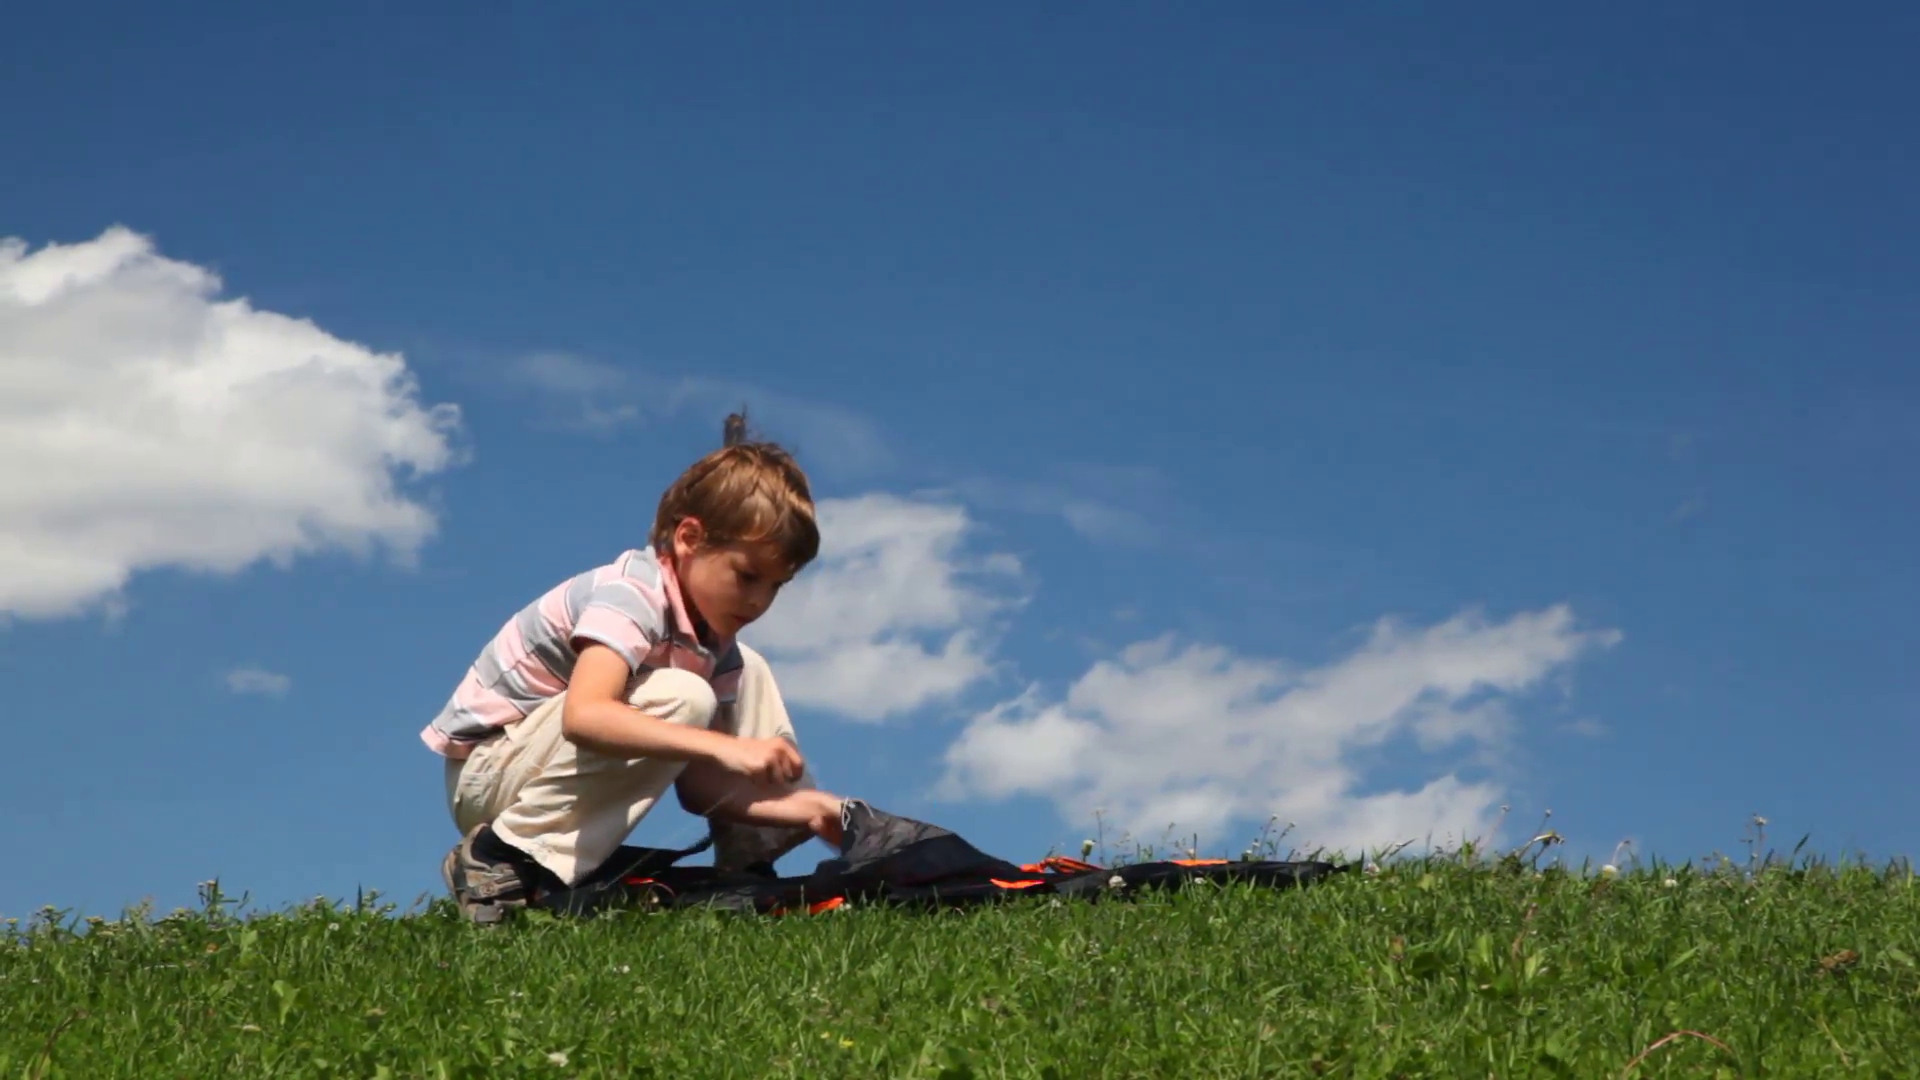 Boy launch kite in meadow Stock Video Footage - VideoBlocks